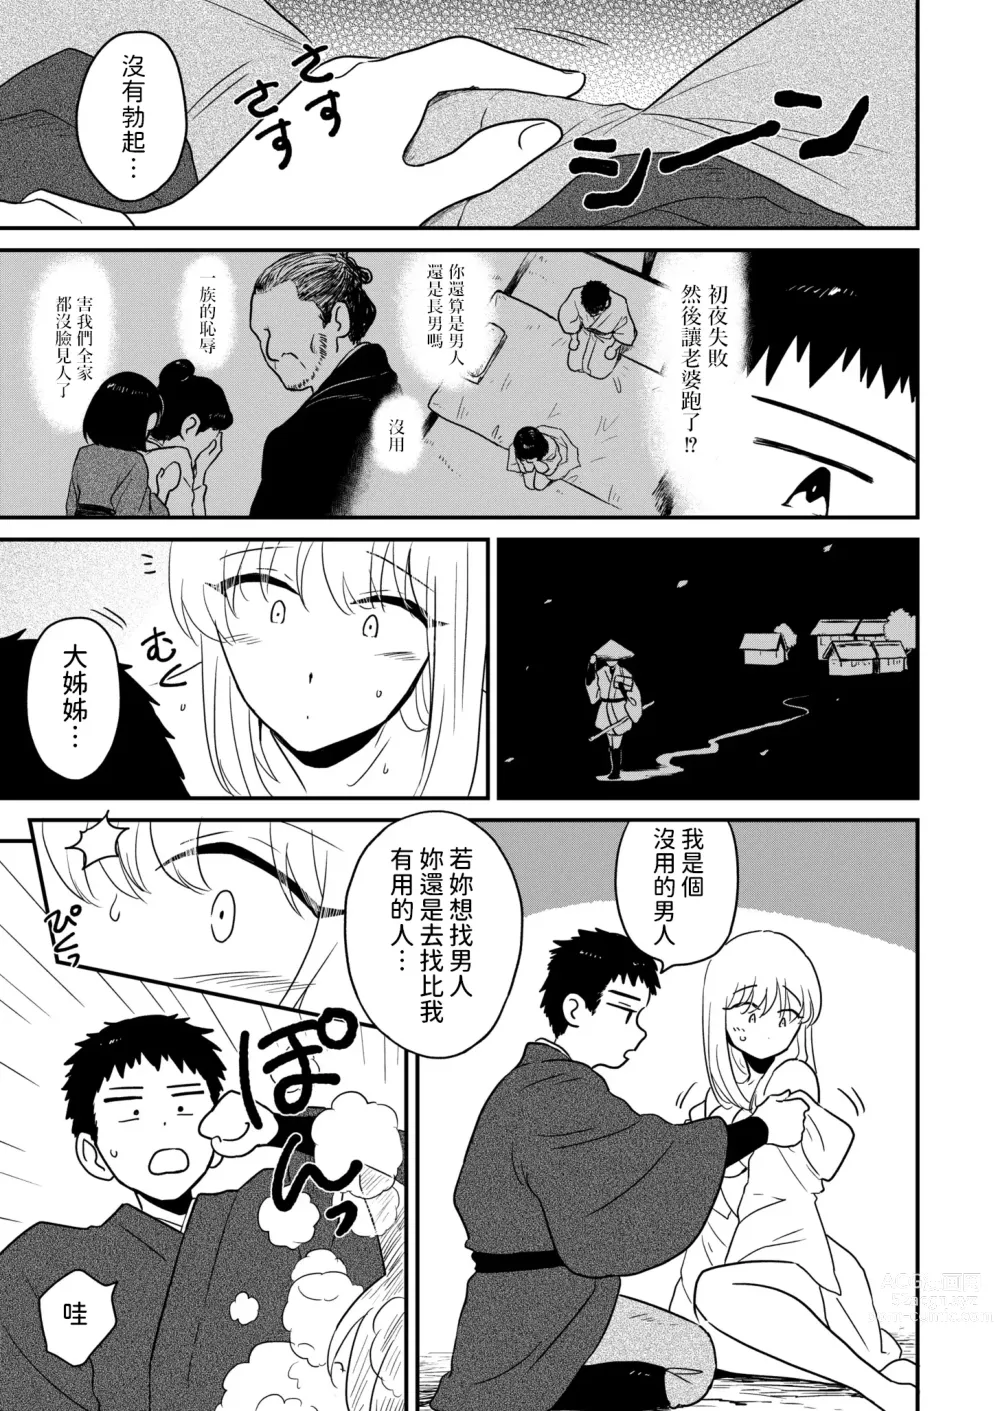 Page 5 of manga Kitsune